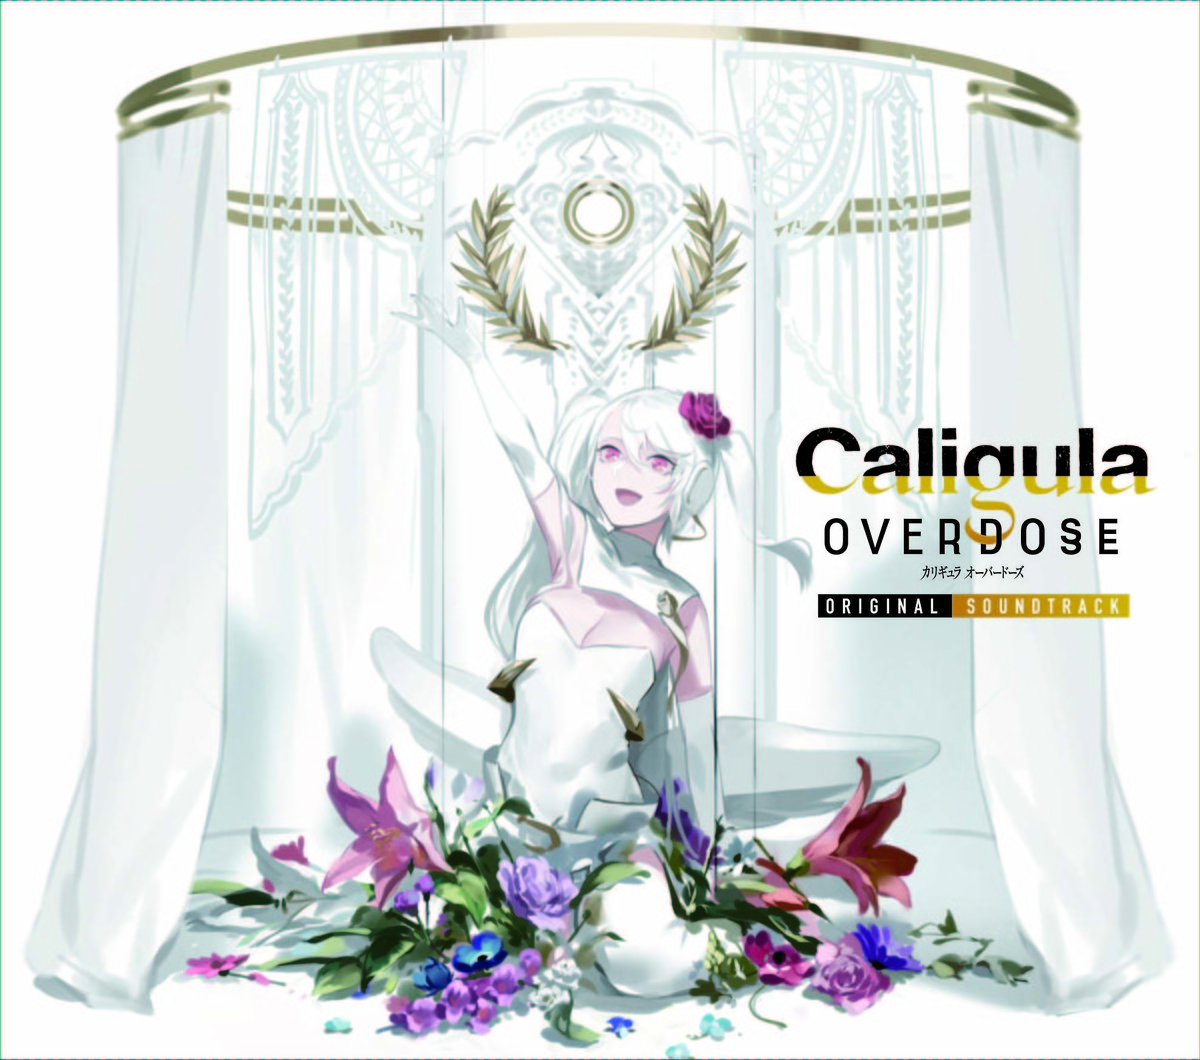 堀江晶太 Penguin Research 鬱pら参加 Playstation4ゲーム Caligula Overdose カリギュラオーバードーズ オリジナル サウンドトラックが5 23にリリース決定